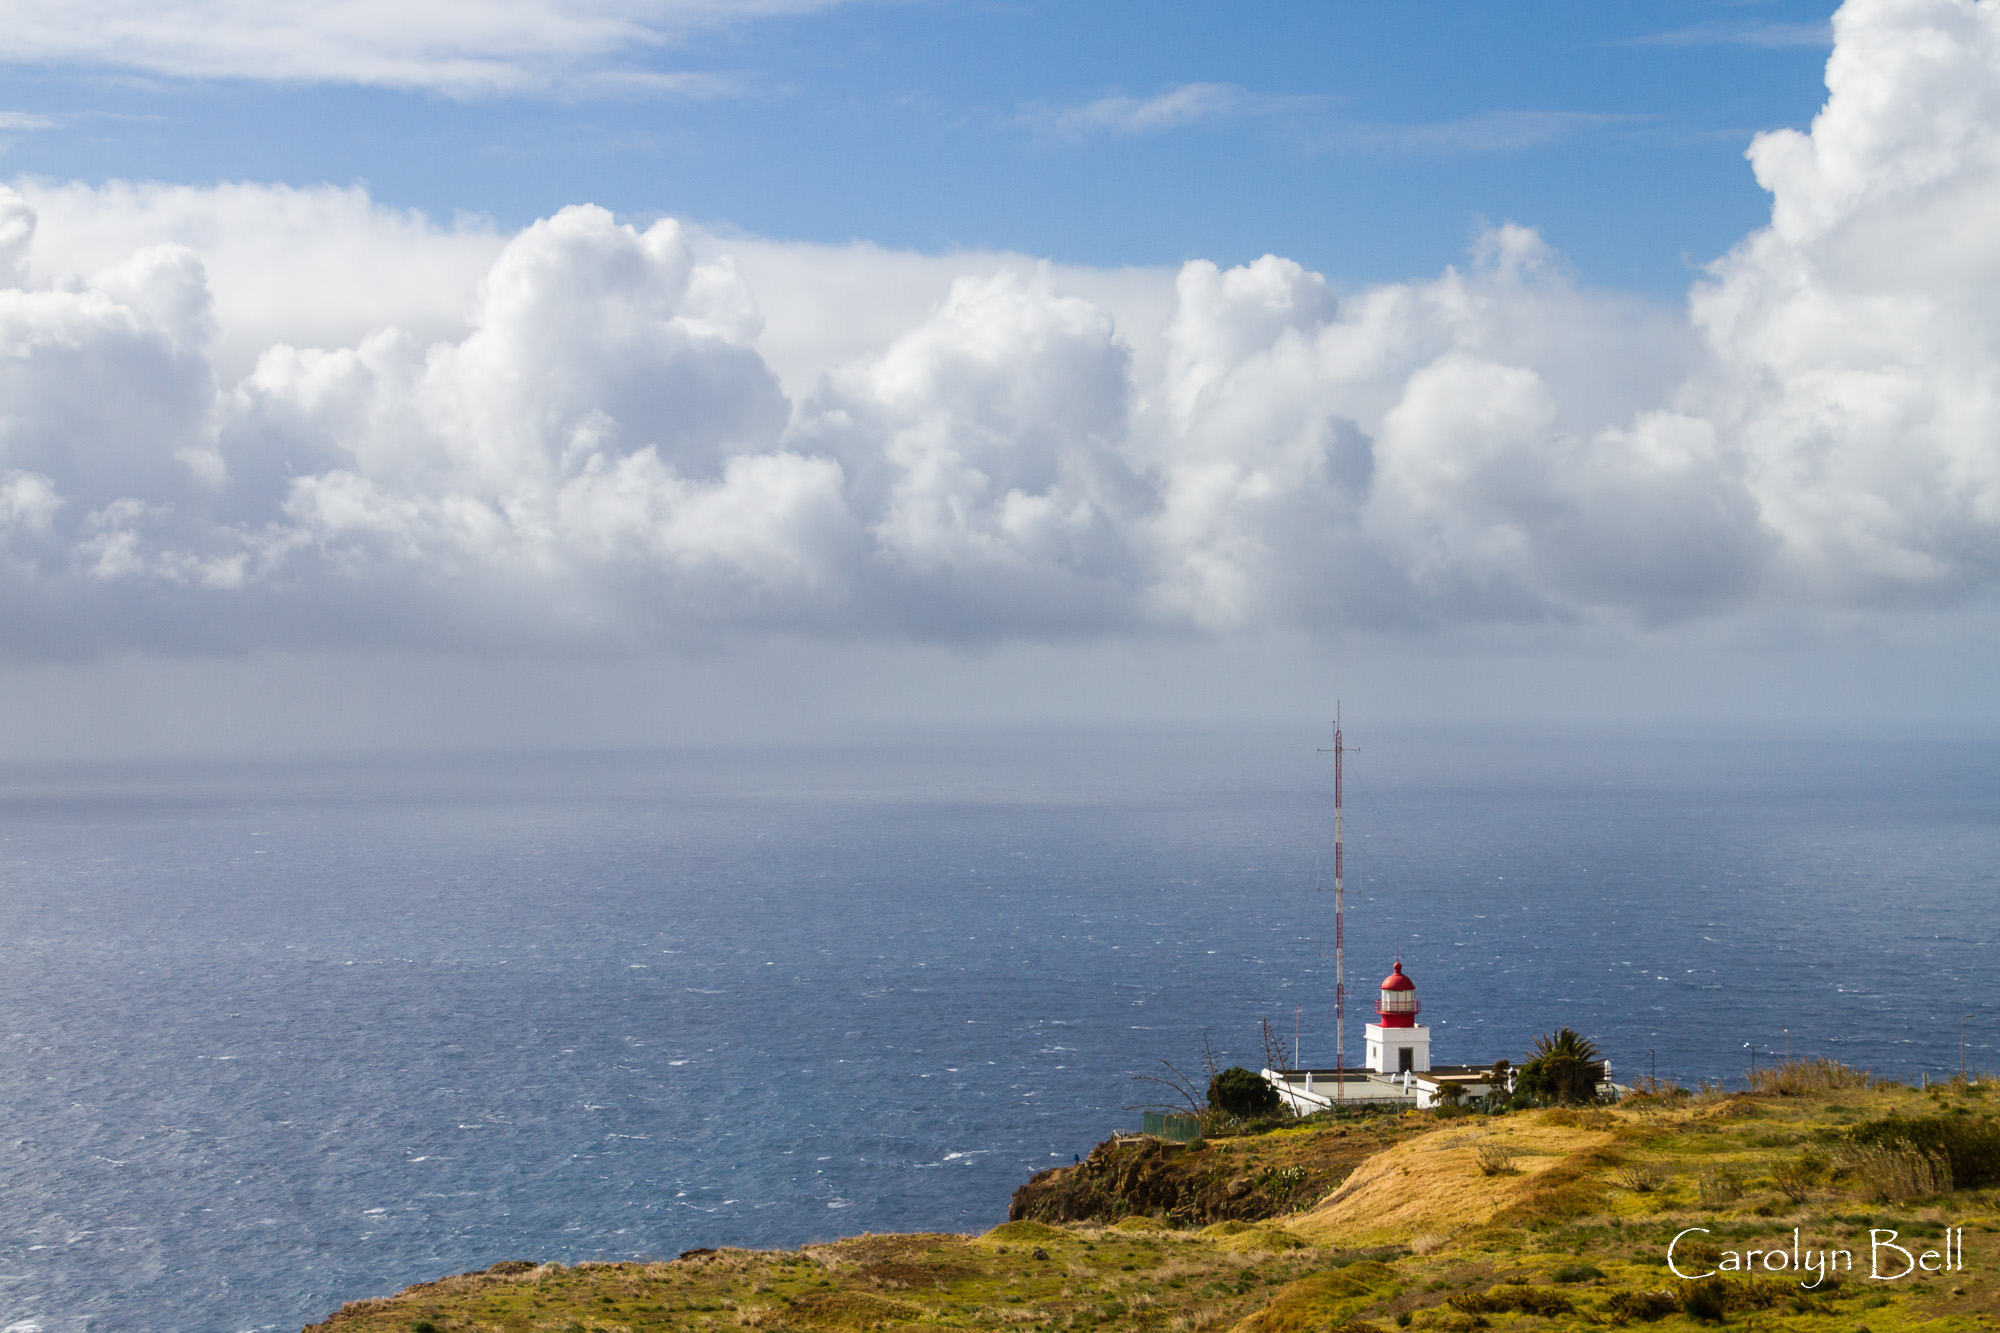 The lighthouse at Ponta do Pargo